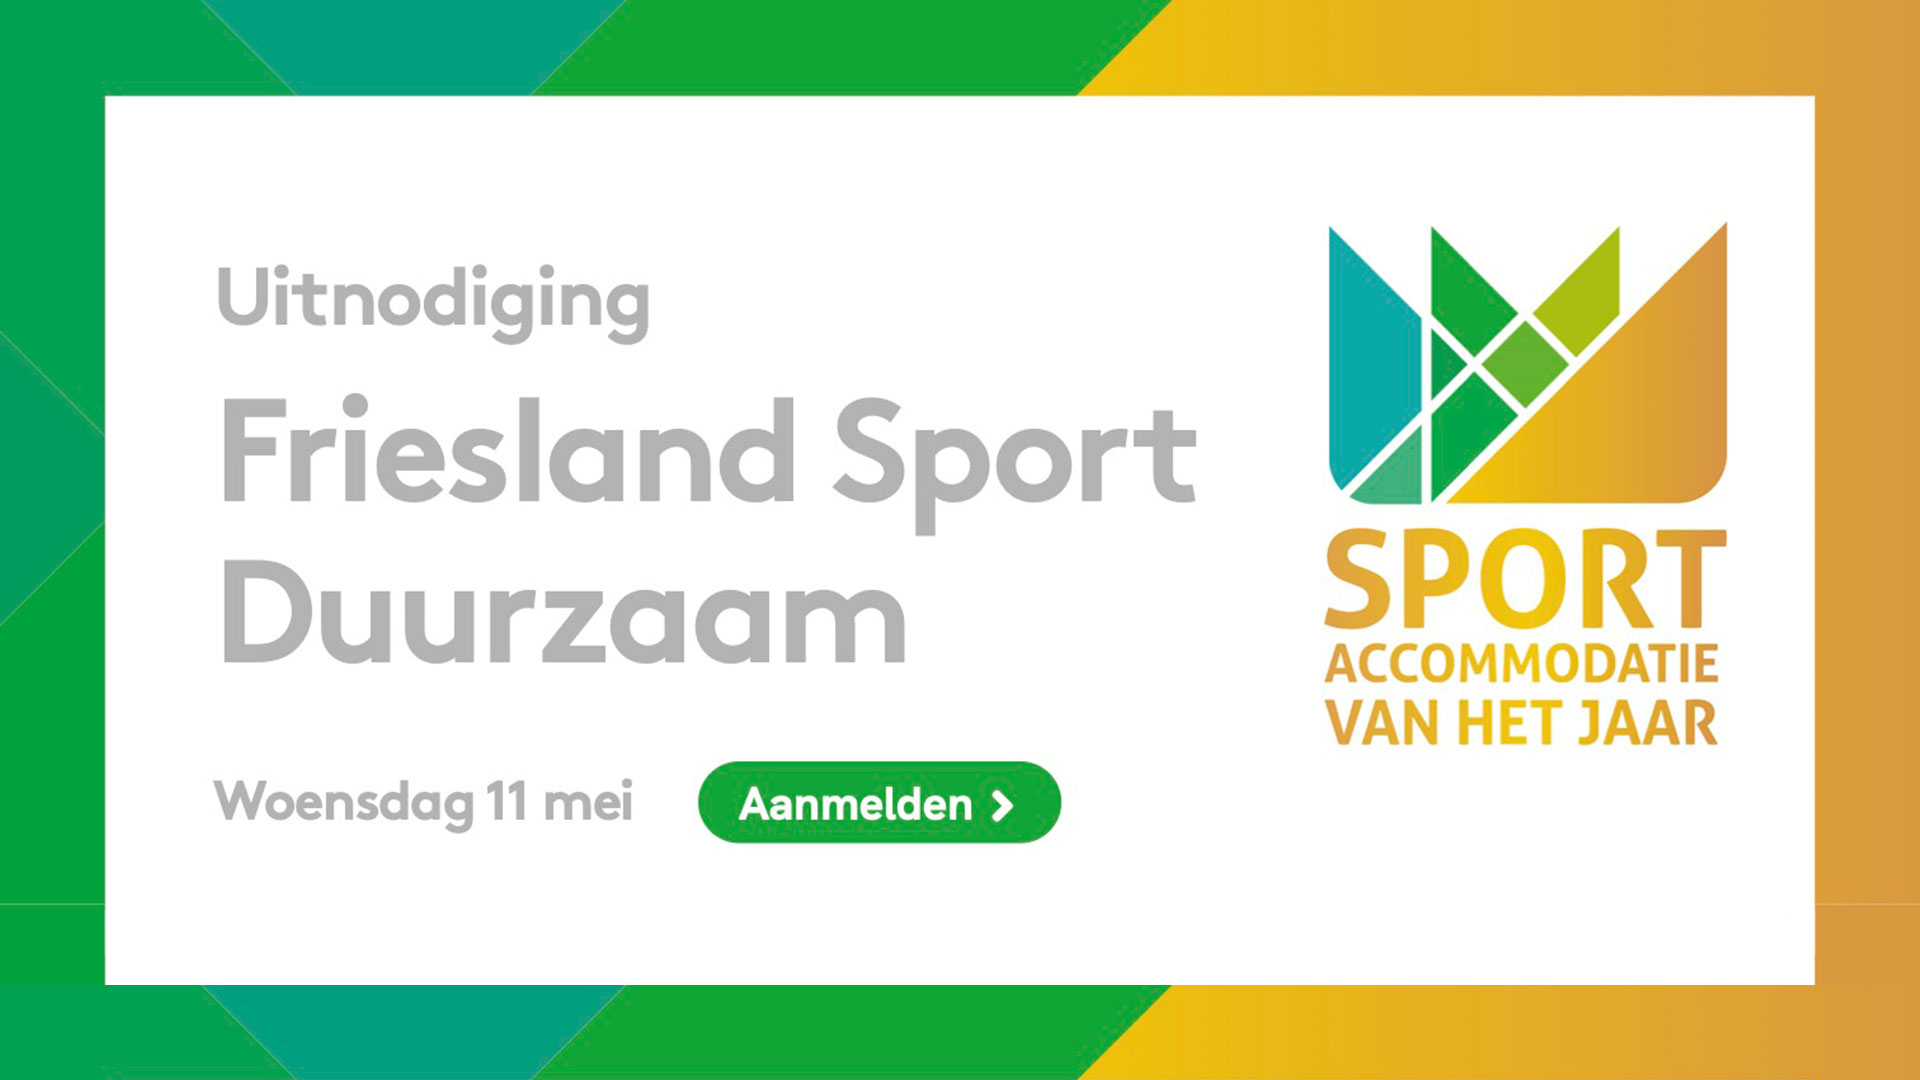 Friesland Sport Duurzaam